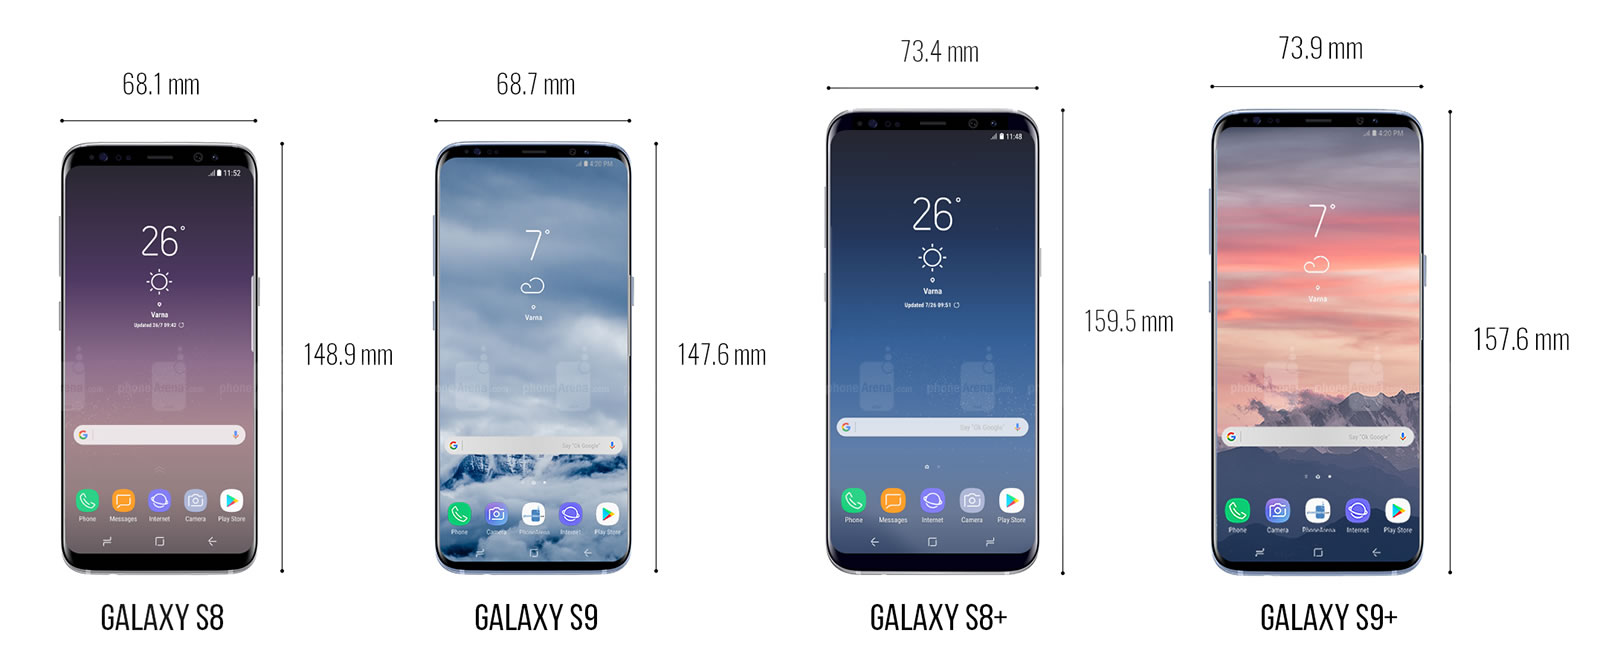 Samsung S9 Vs S8